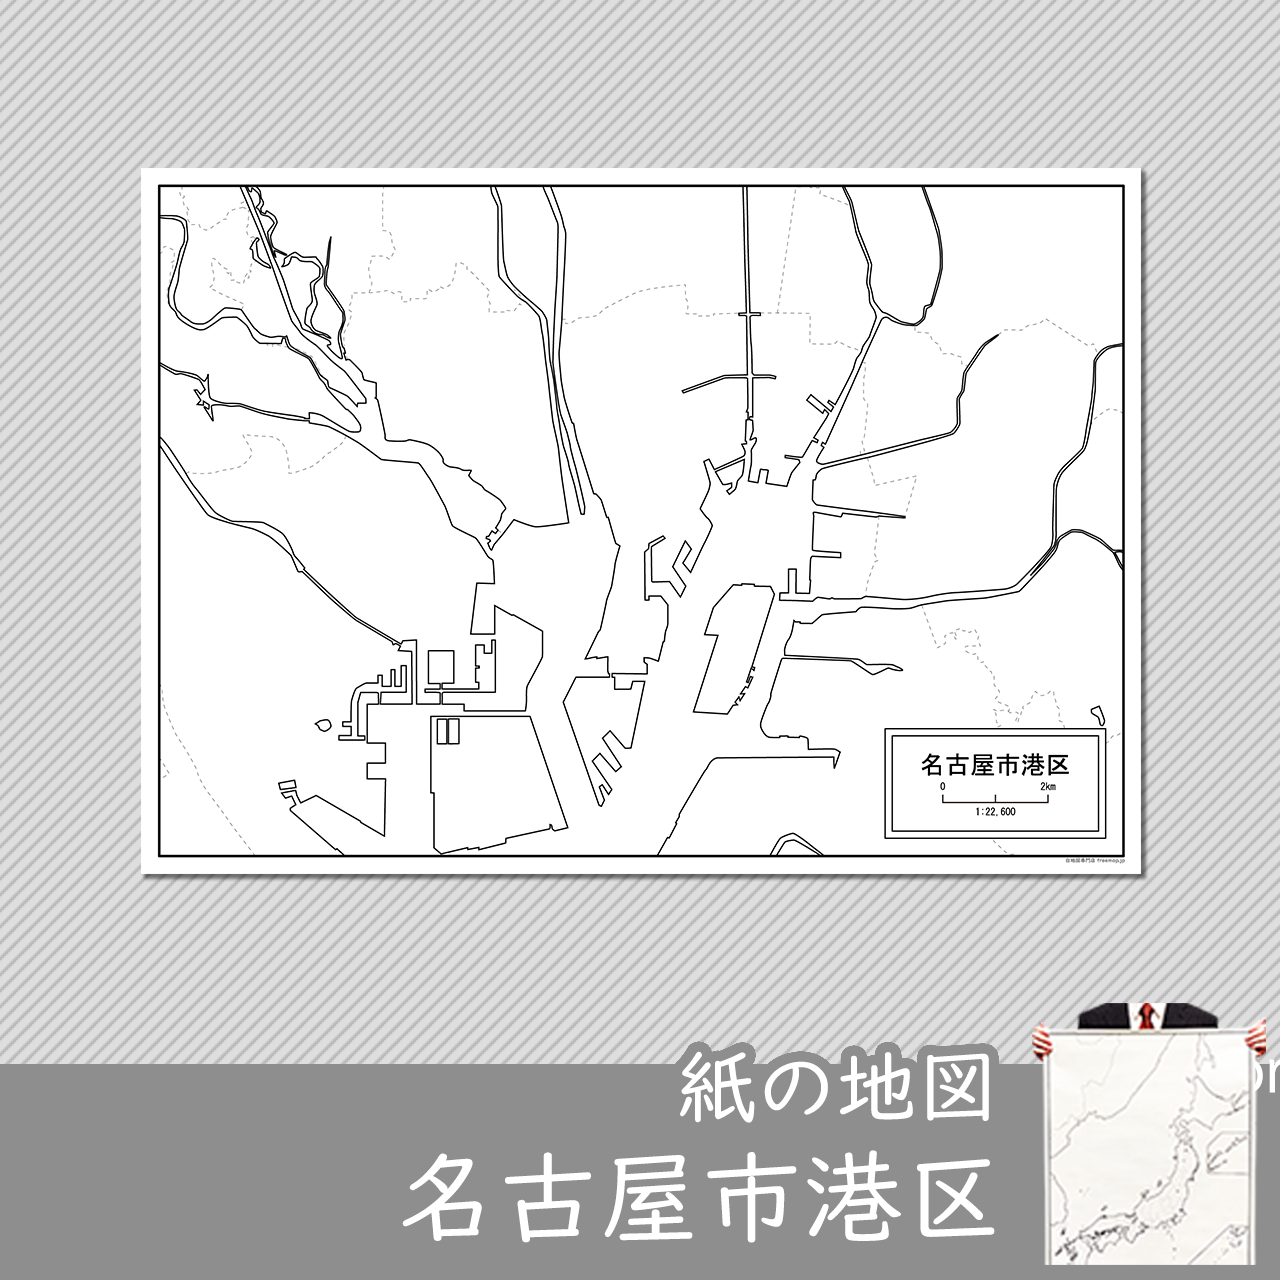 名古屋市港区の紙の白地図